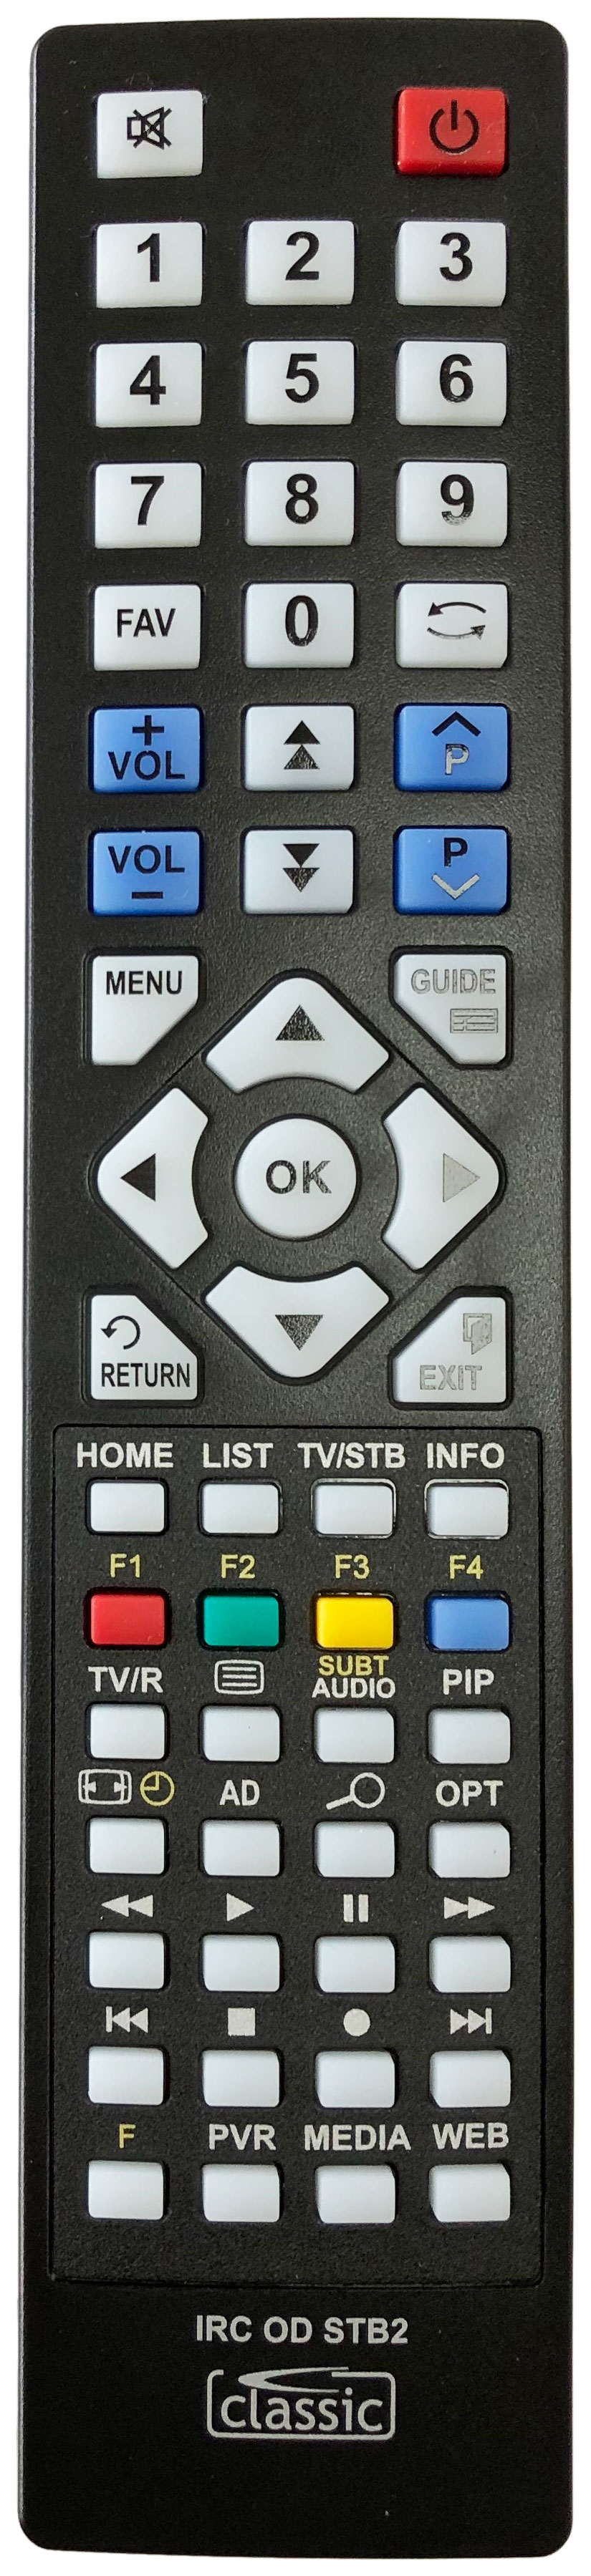 MANHATTAN SX FREESAT HD Remote Control Alternative 